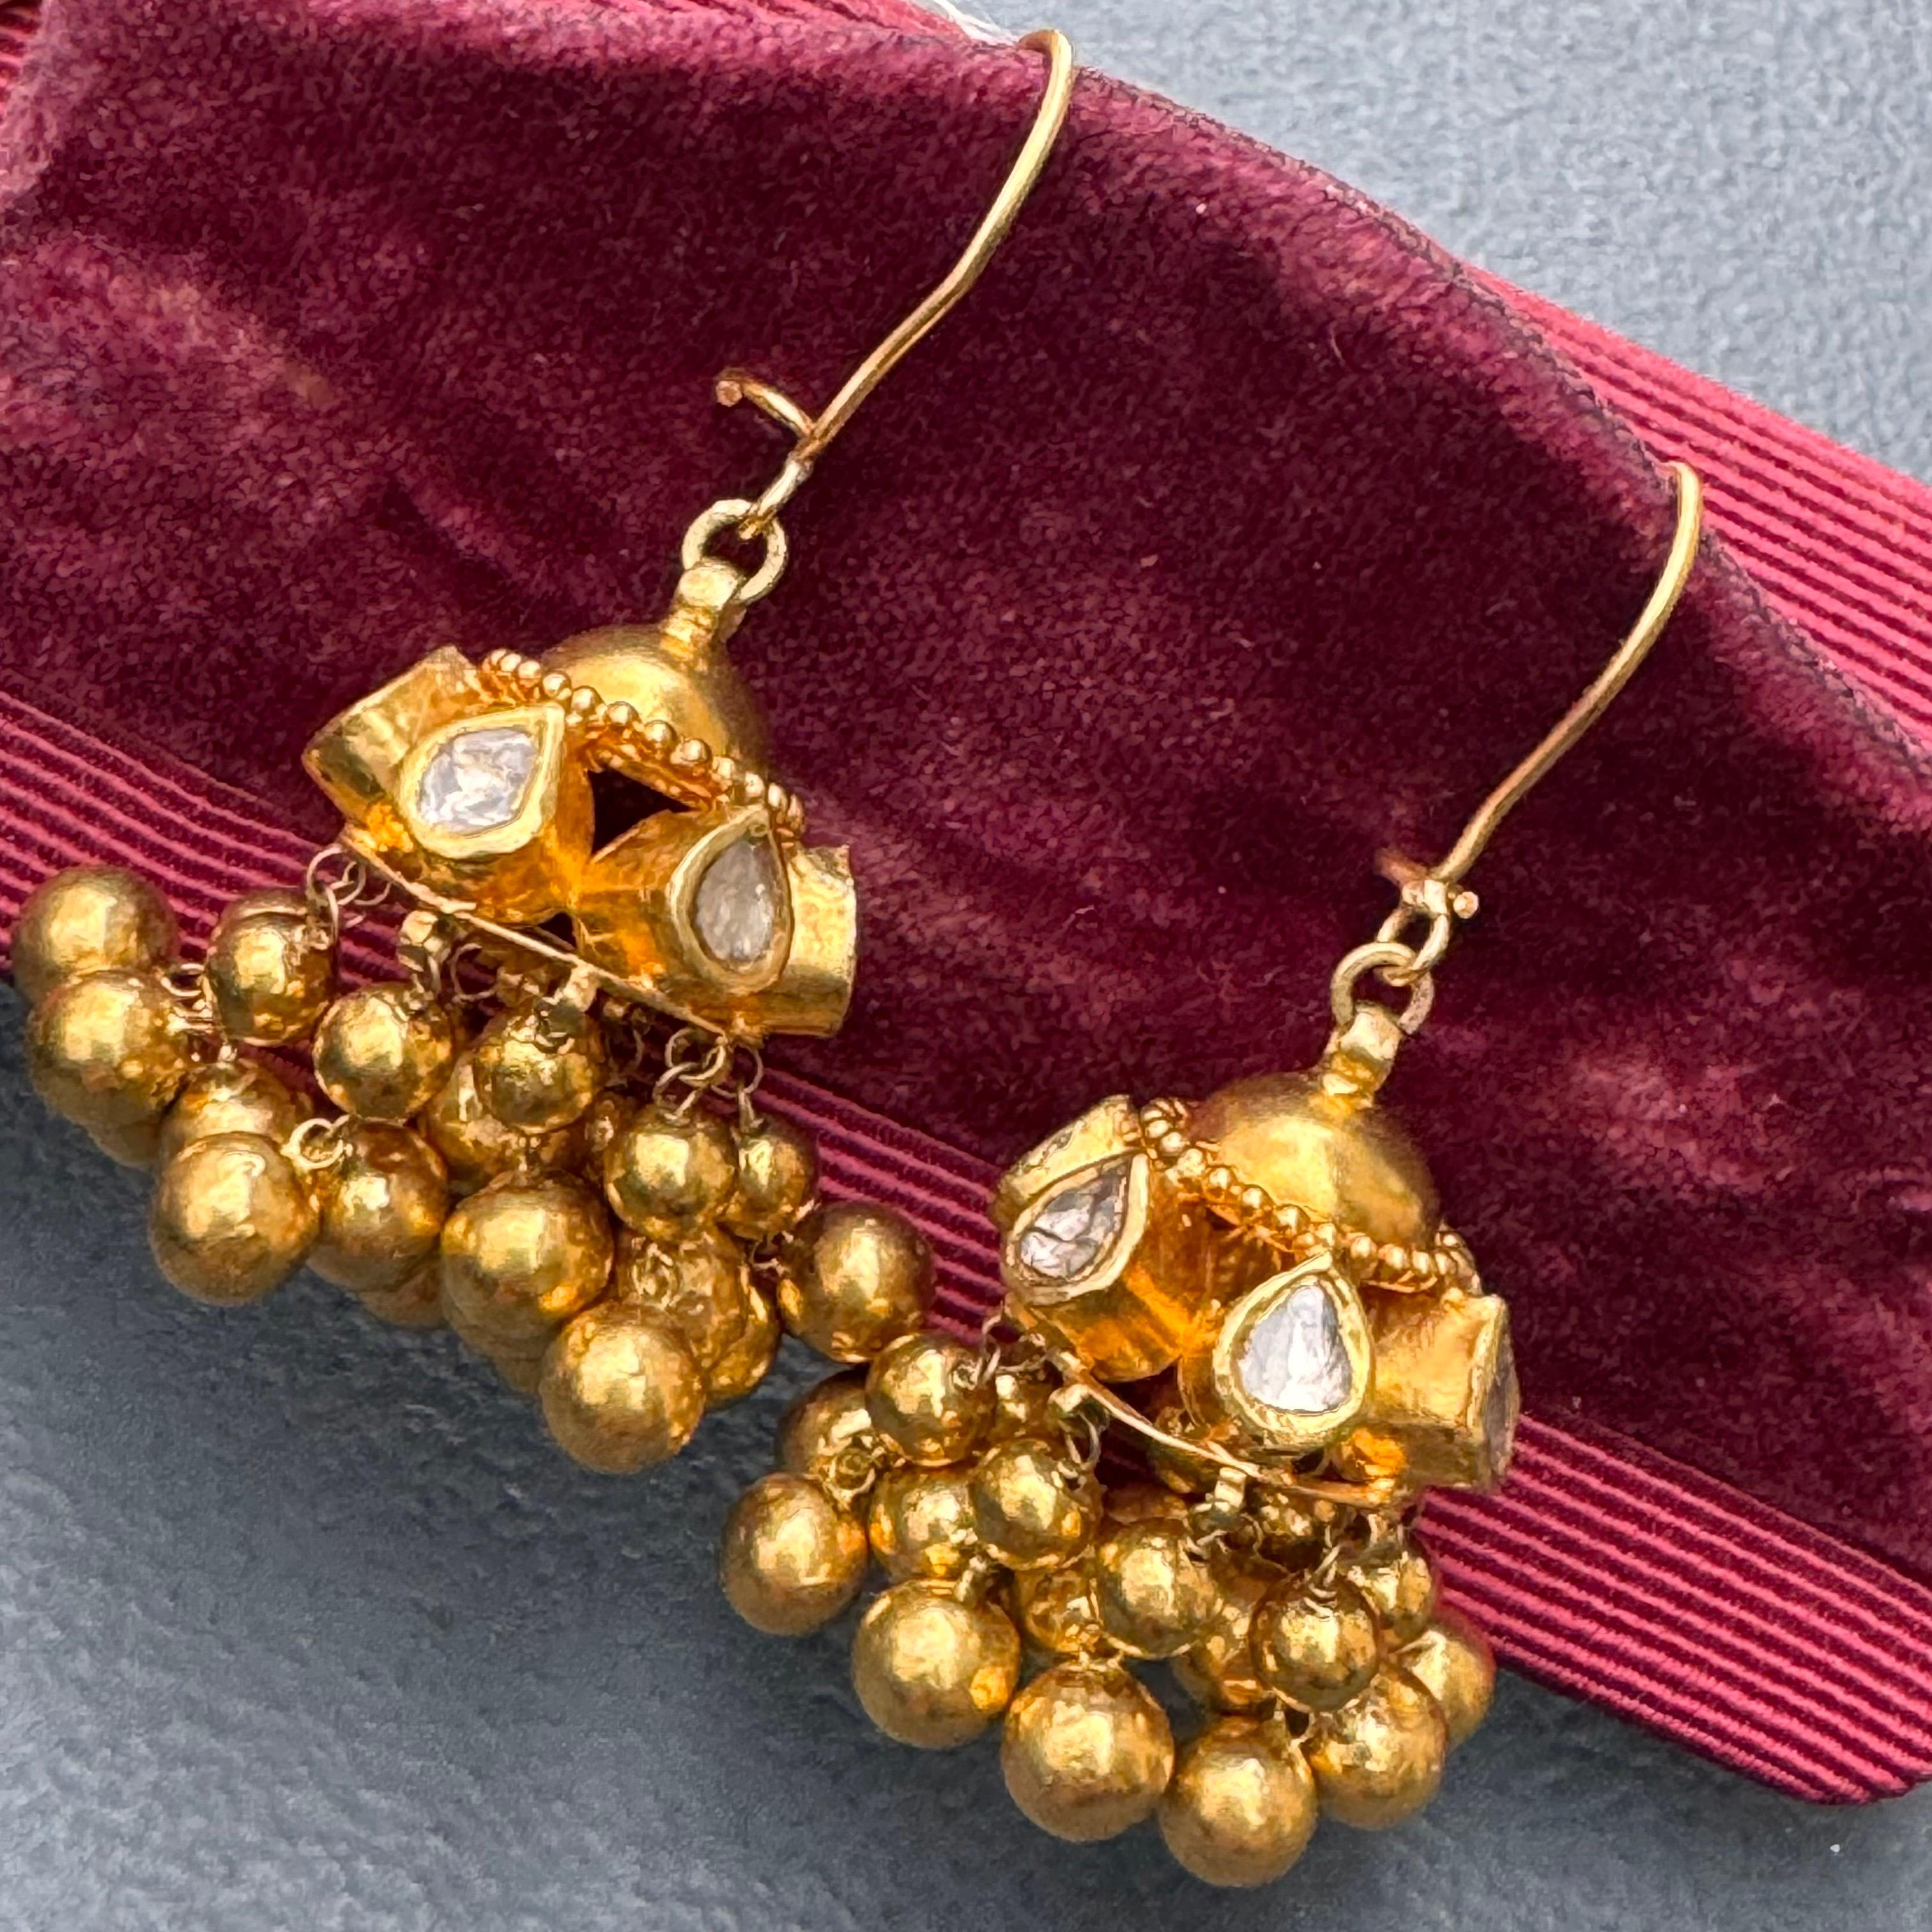 Vintage By  Boucles d'oreilles pendantes en or massif 21kt et diamants véritables pour oreilles percées. Extrêmement bien fait avec de beaux détails.
Il y a au total 12 diamants taillés en rose d'environ 1,80 cttw qui sont sertis dans de l'or jaune